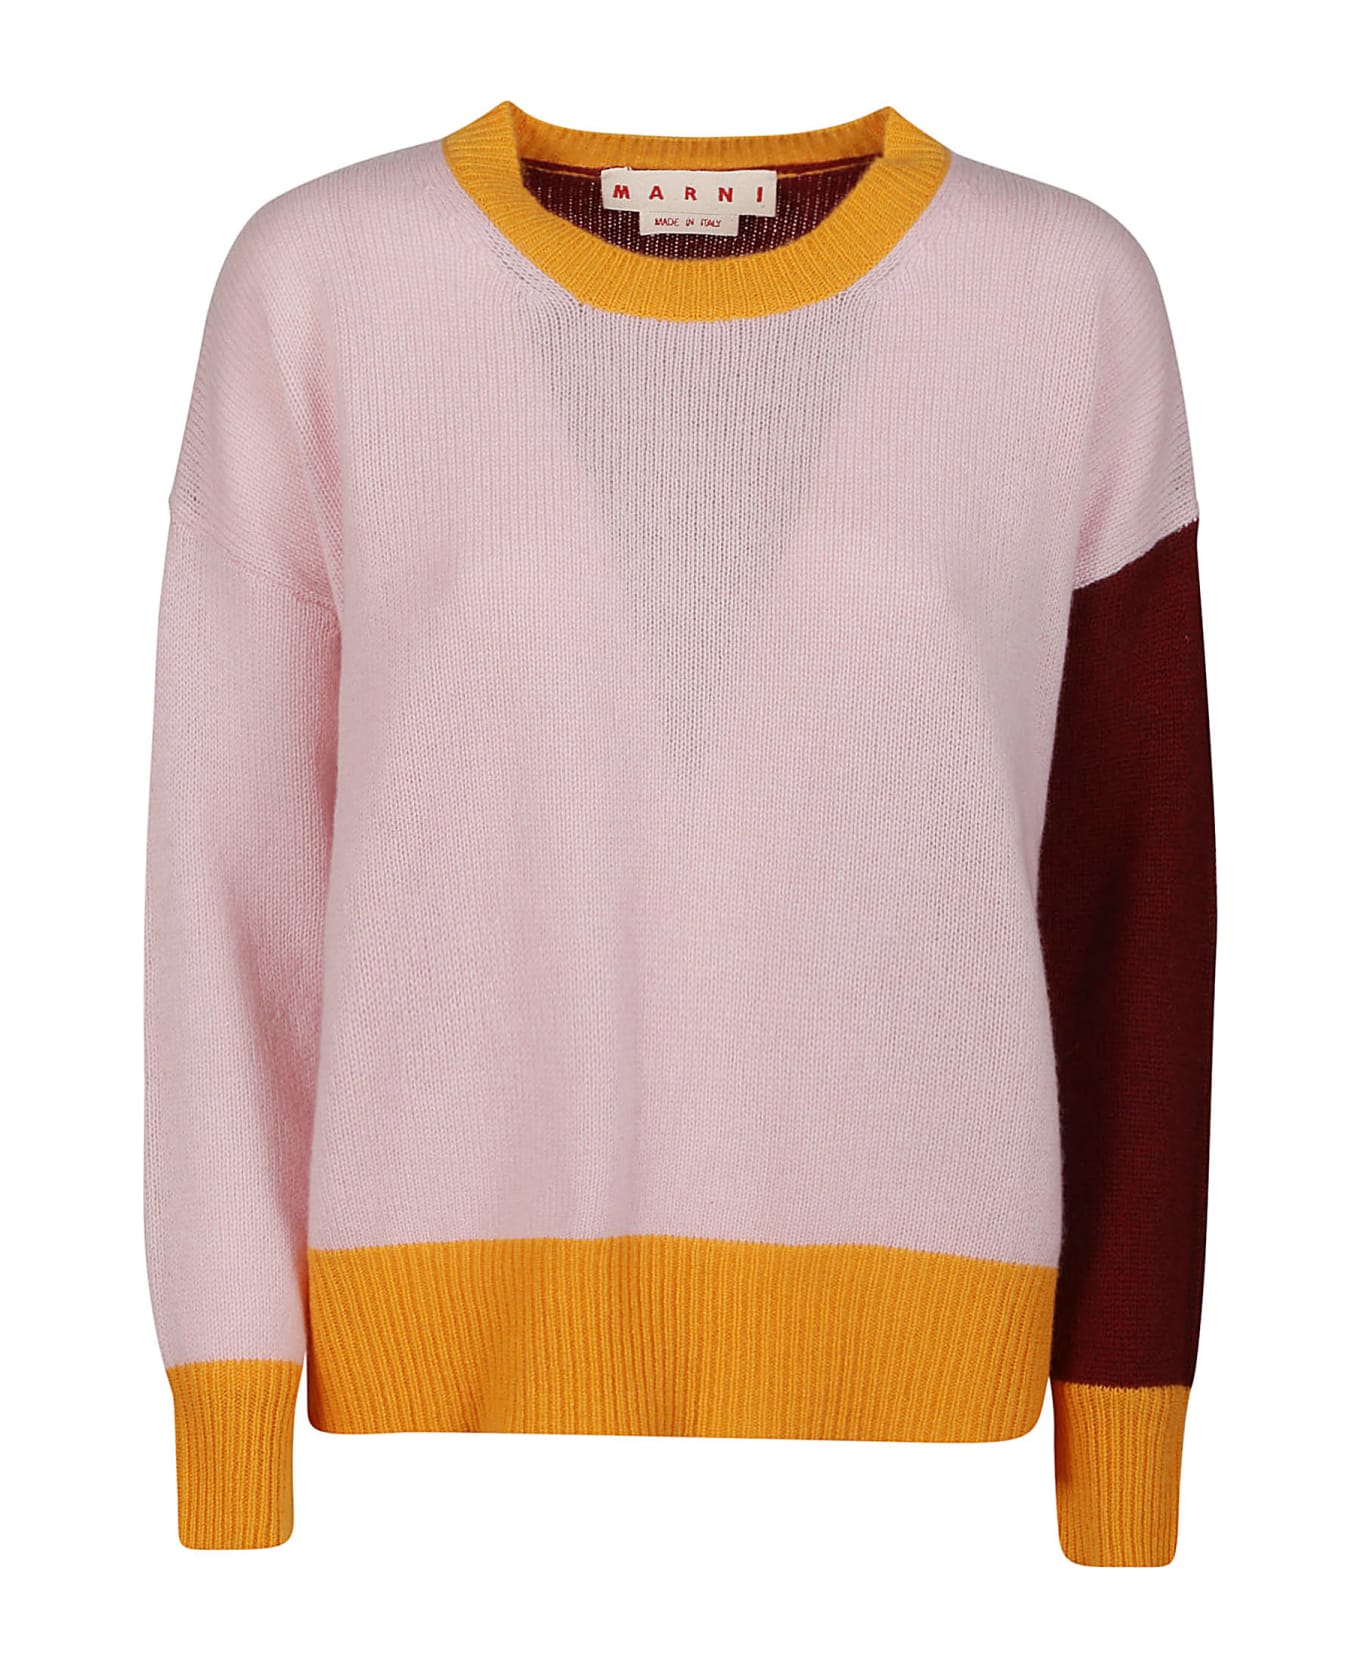 Marni Round Neck Sweater - Quartz ニットウェア